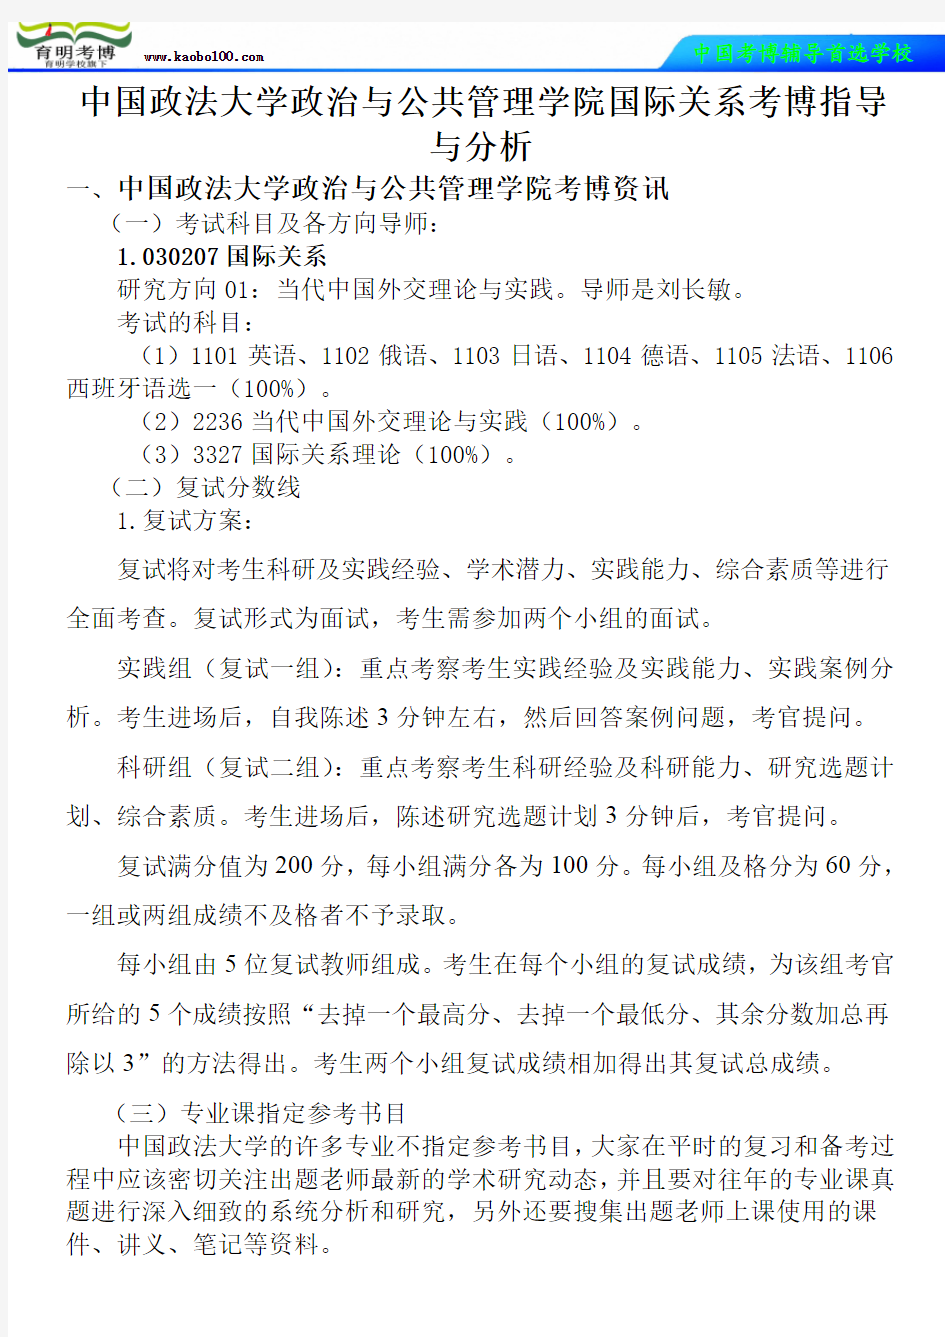 中国政法大学政治与公共管理学院国际关系考博真题-参考书-分数线-分析资料-复习方法-育明考博